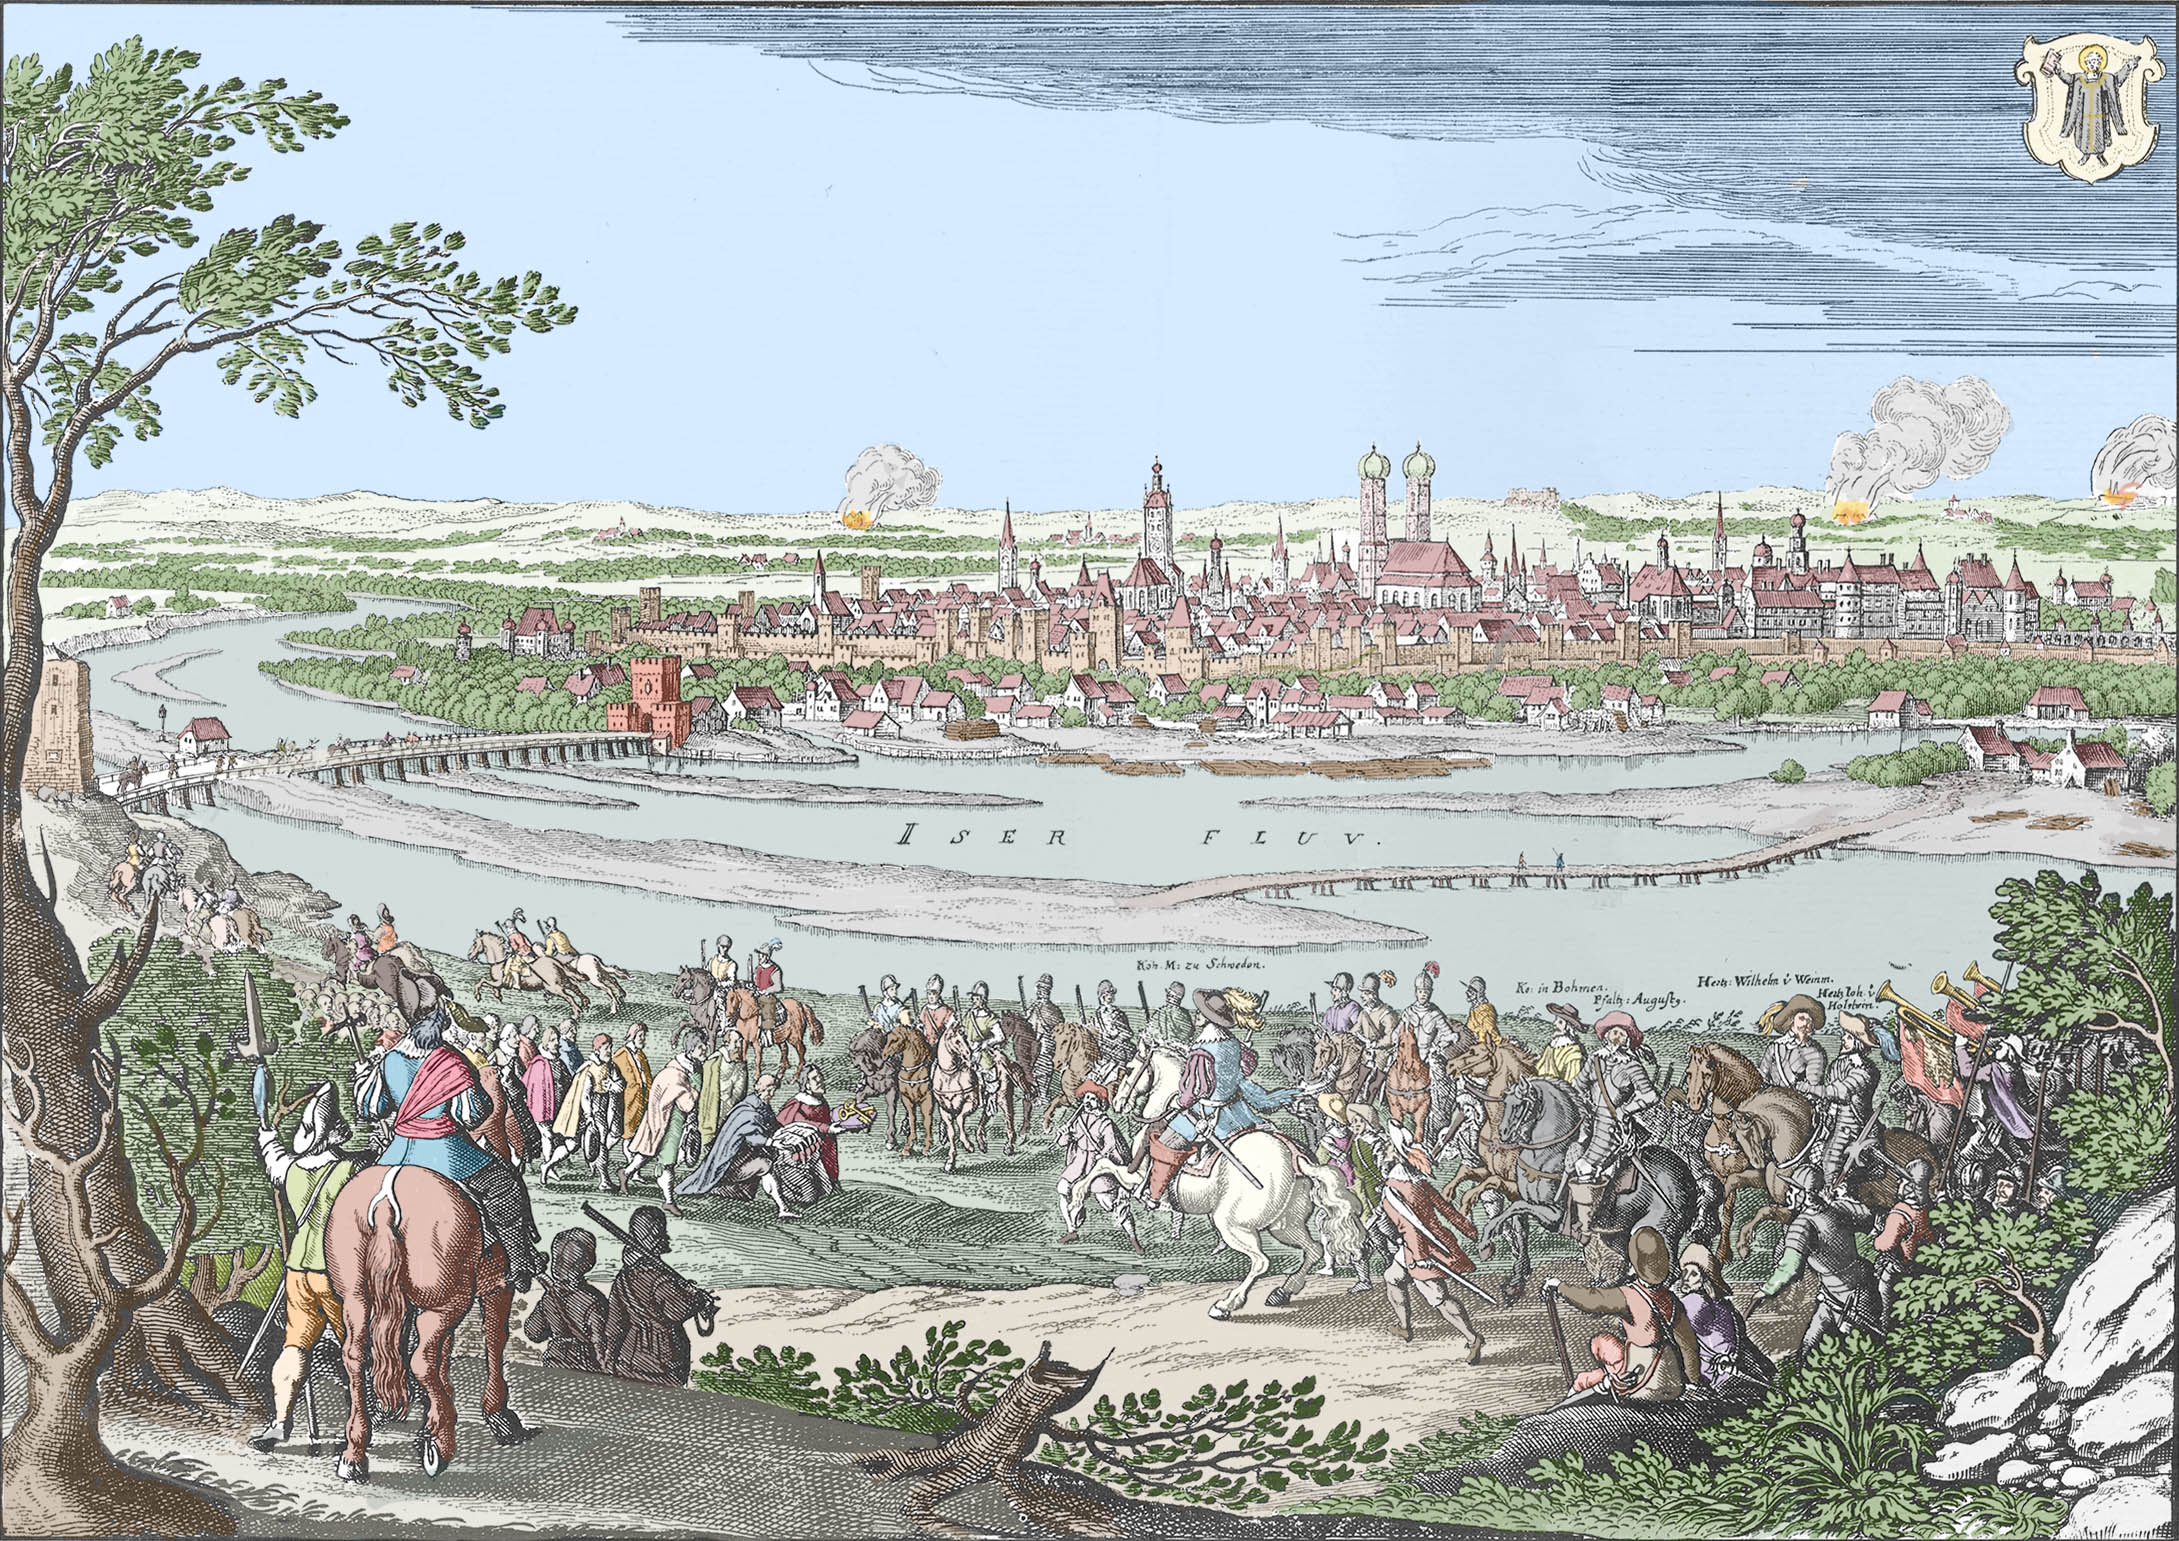 Einzug König Gustav Adolphs von Schweden in München 17. Mai 1632